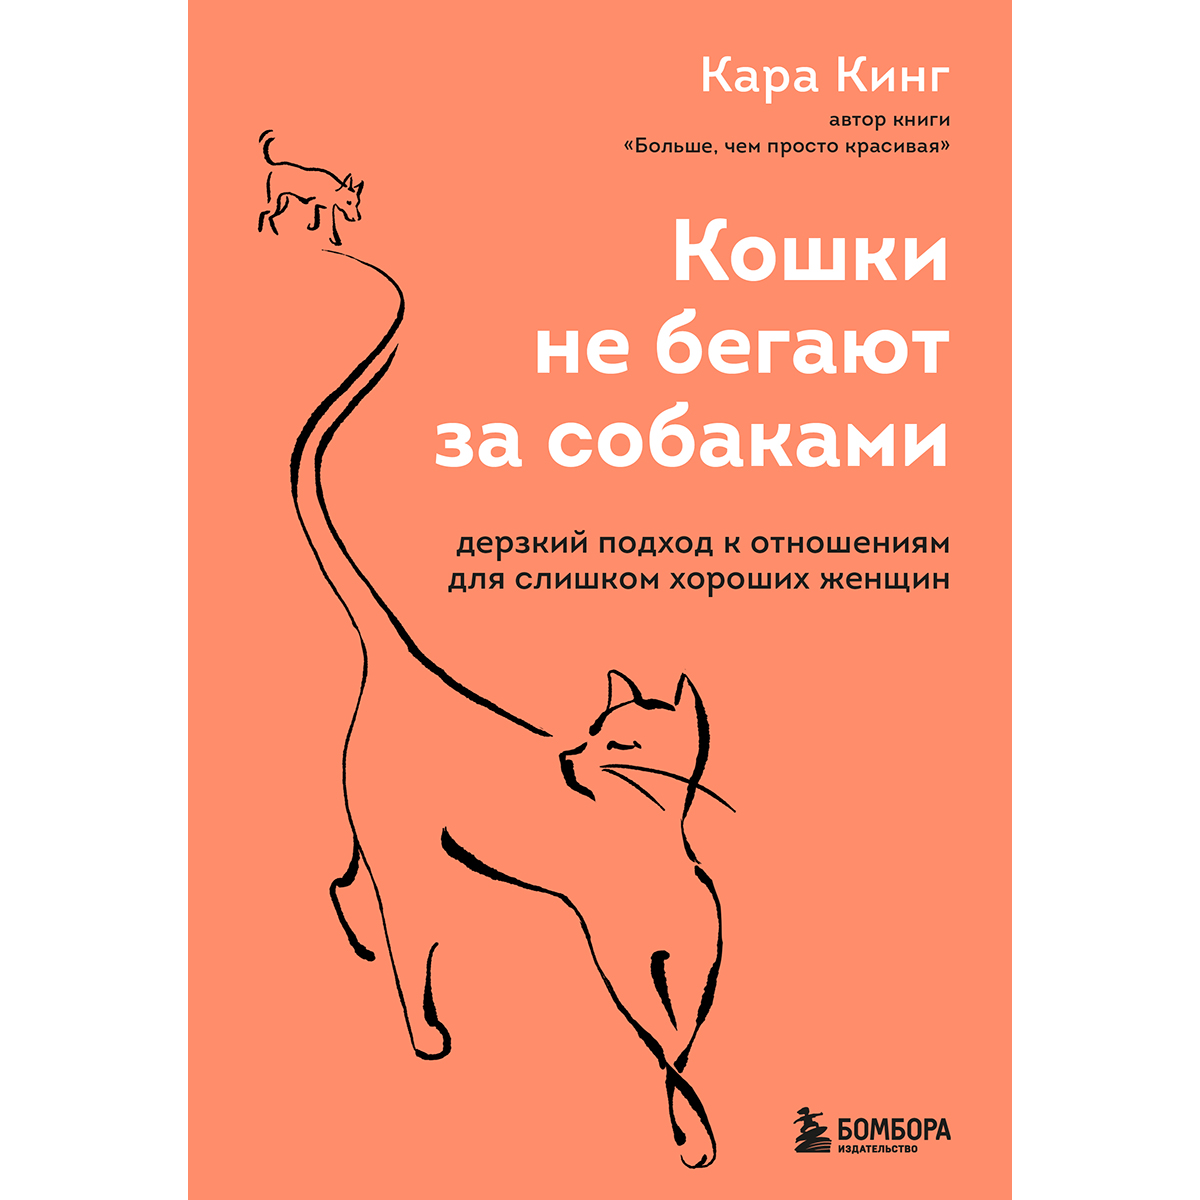 Кинг Кара: Кошки не бегают за собаками. Дерзкий подход к отношениям для  слишком хороших женщин: купить книгу по низкой цене в интернет-магазине  Meloman | Алматы